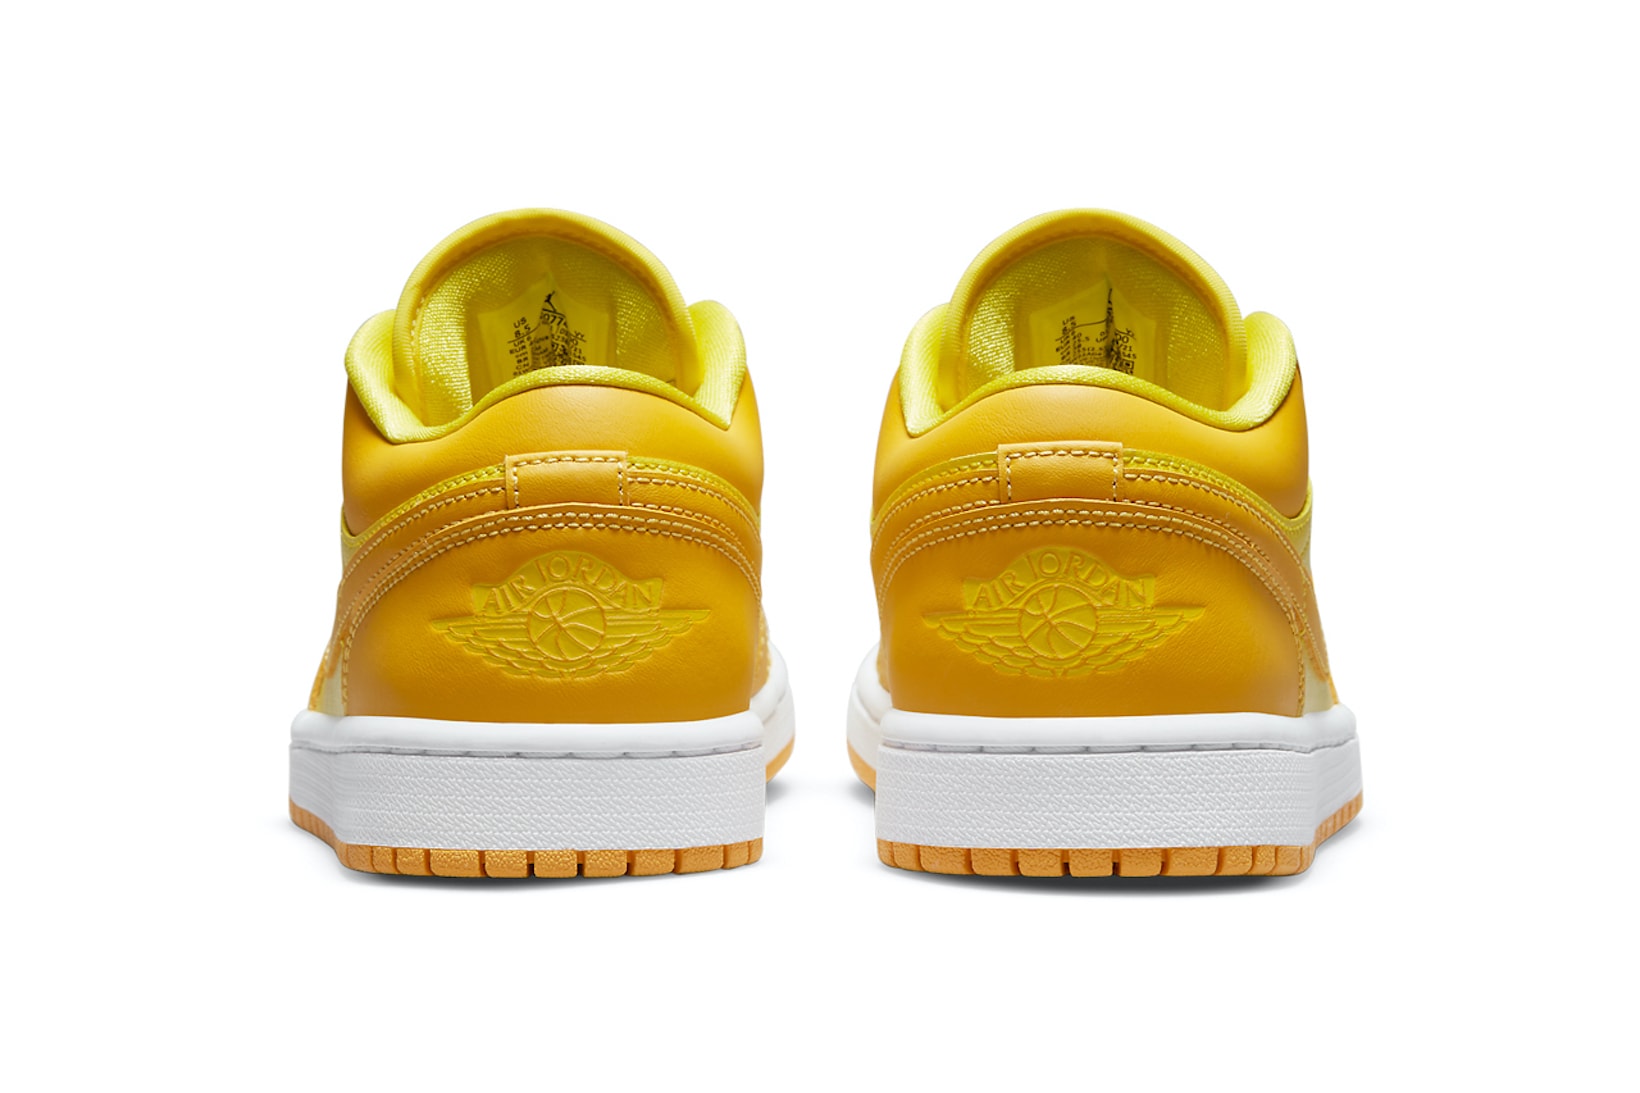 Nike Air Jordan 1 Low AJ1 Yellow Strike Colorway Sneakers Shoes Footwear Kicks Sneakerhead Heel